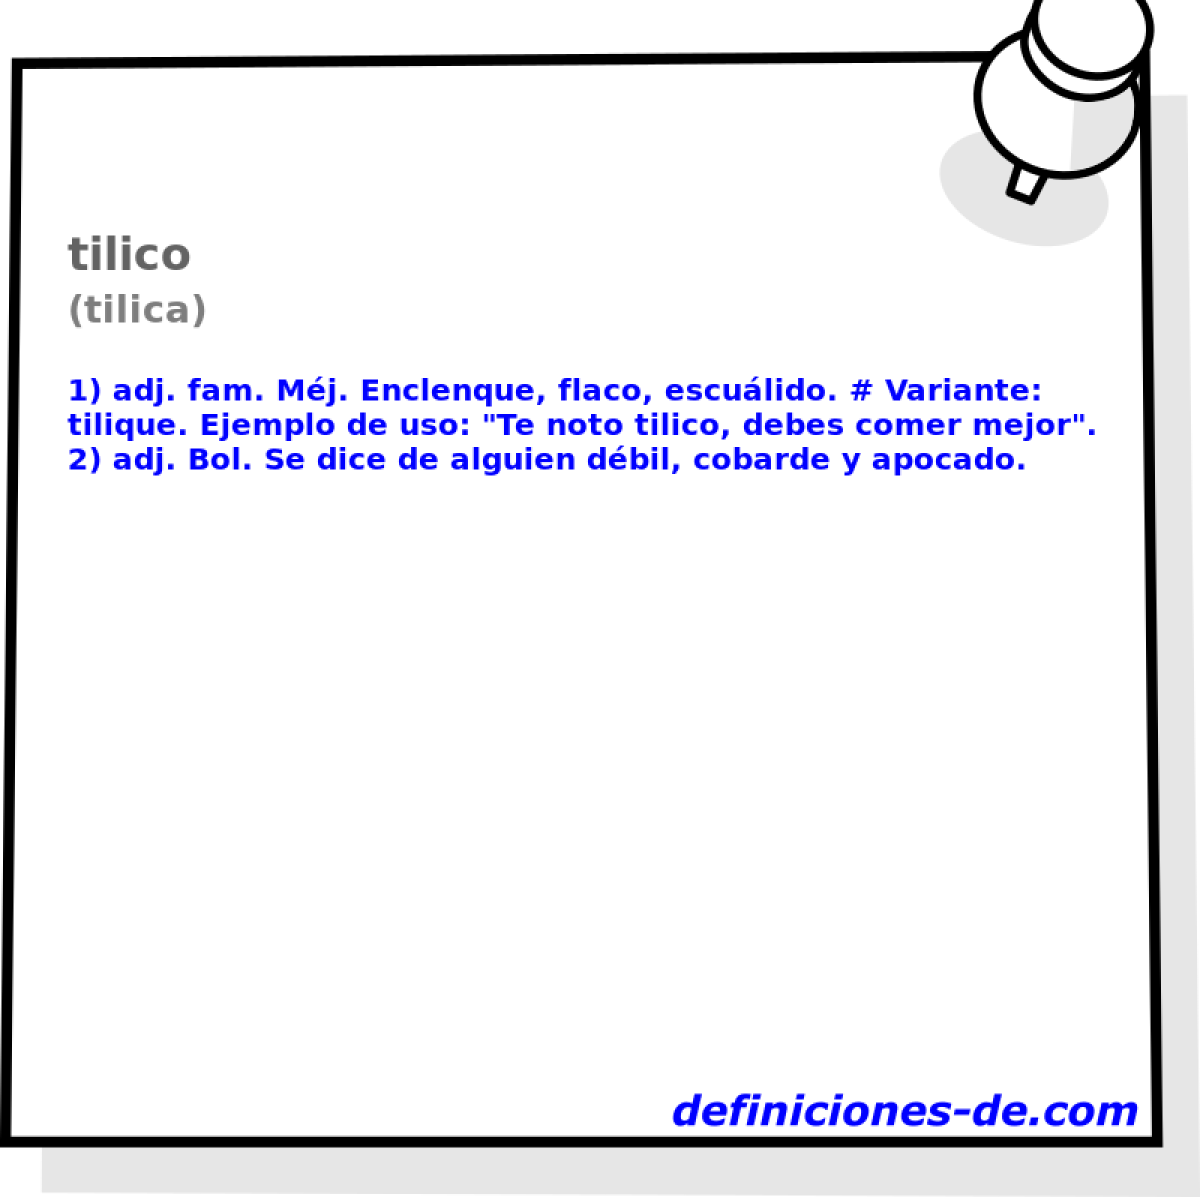 tilico (tilica)